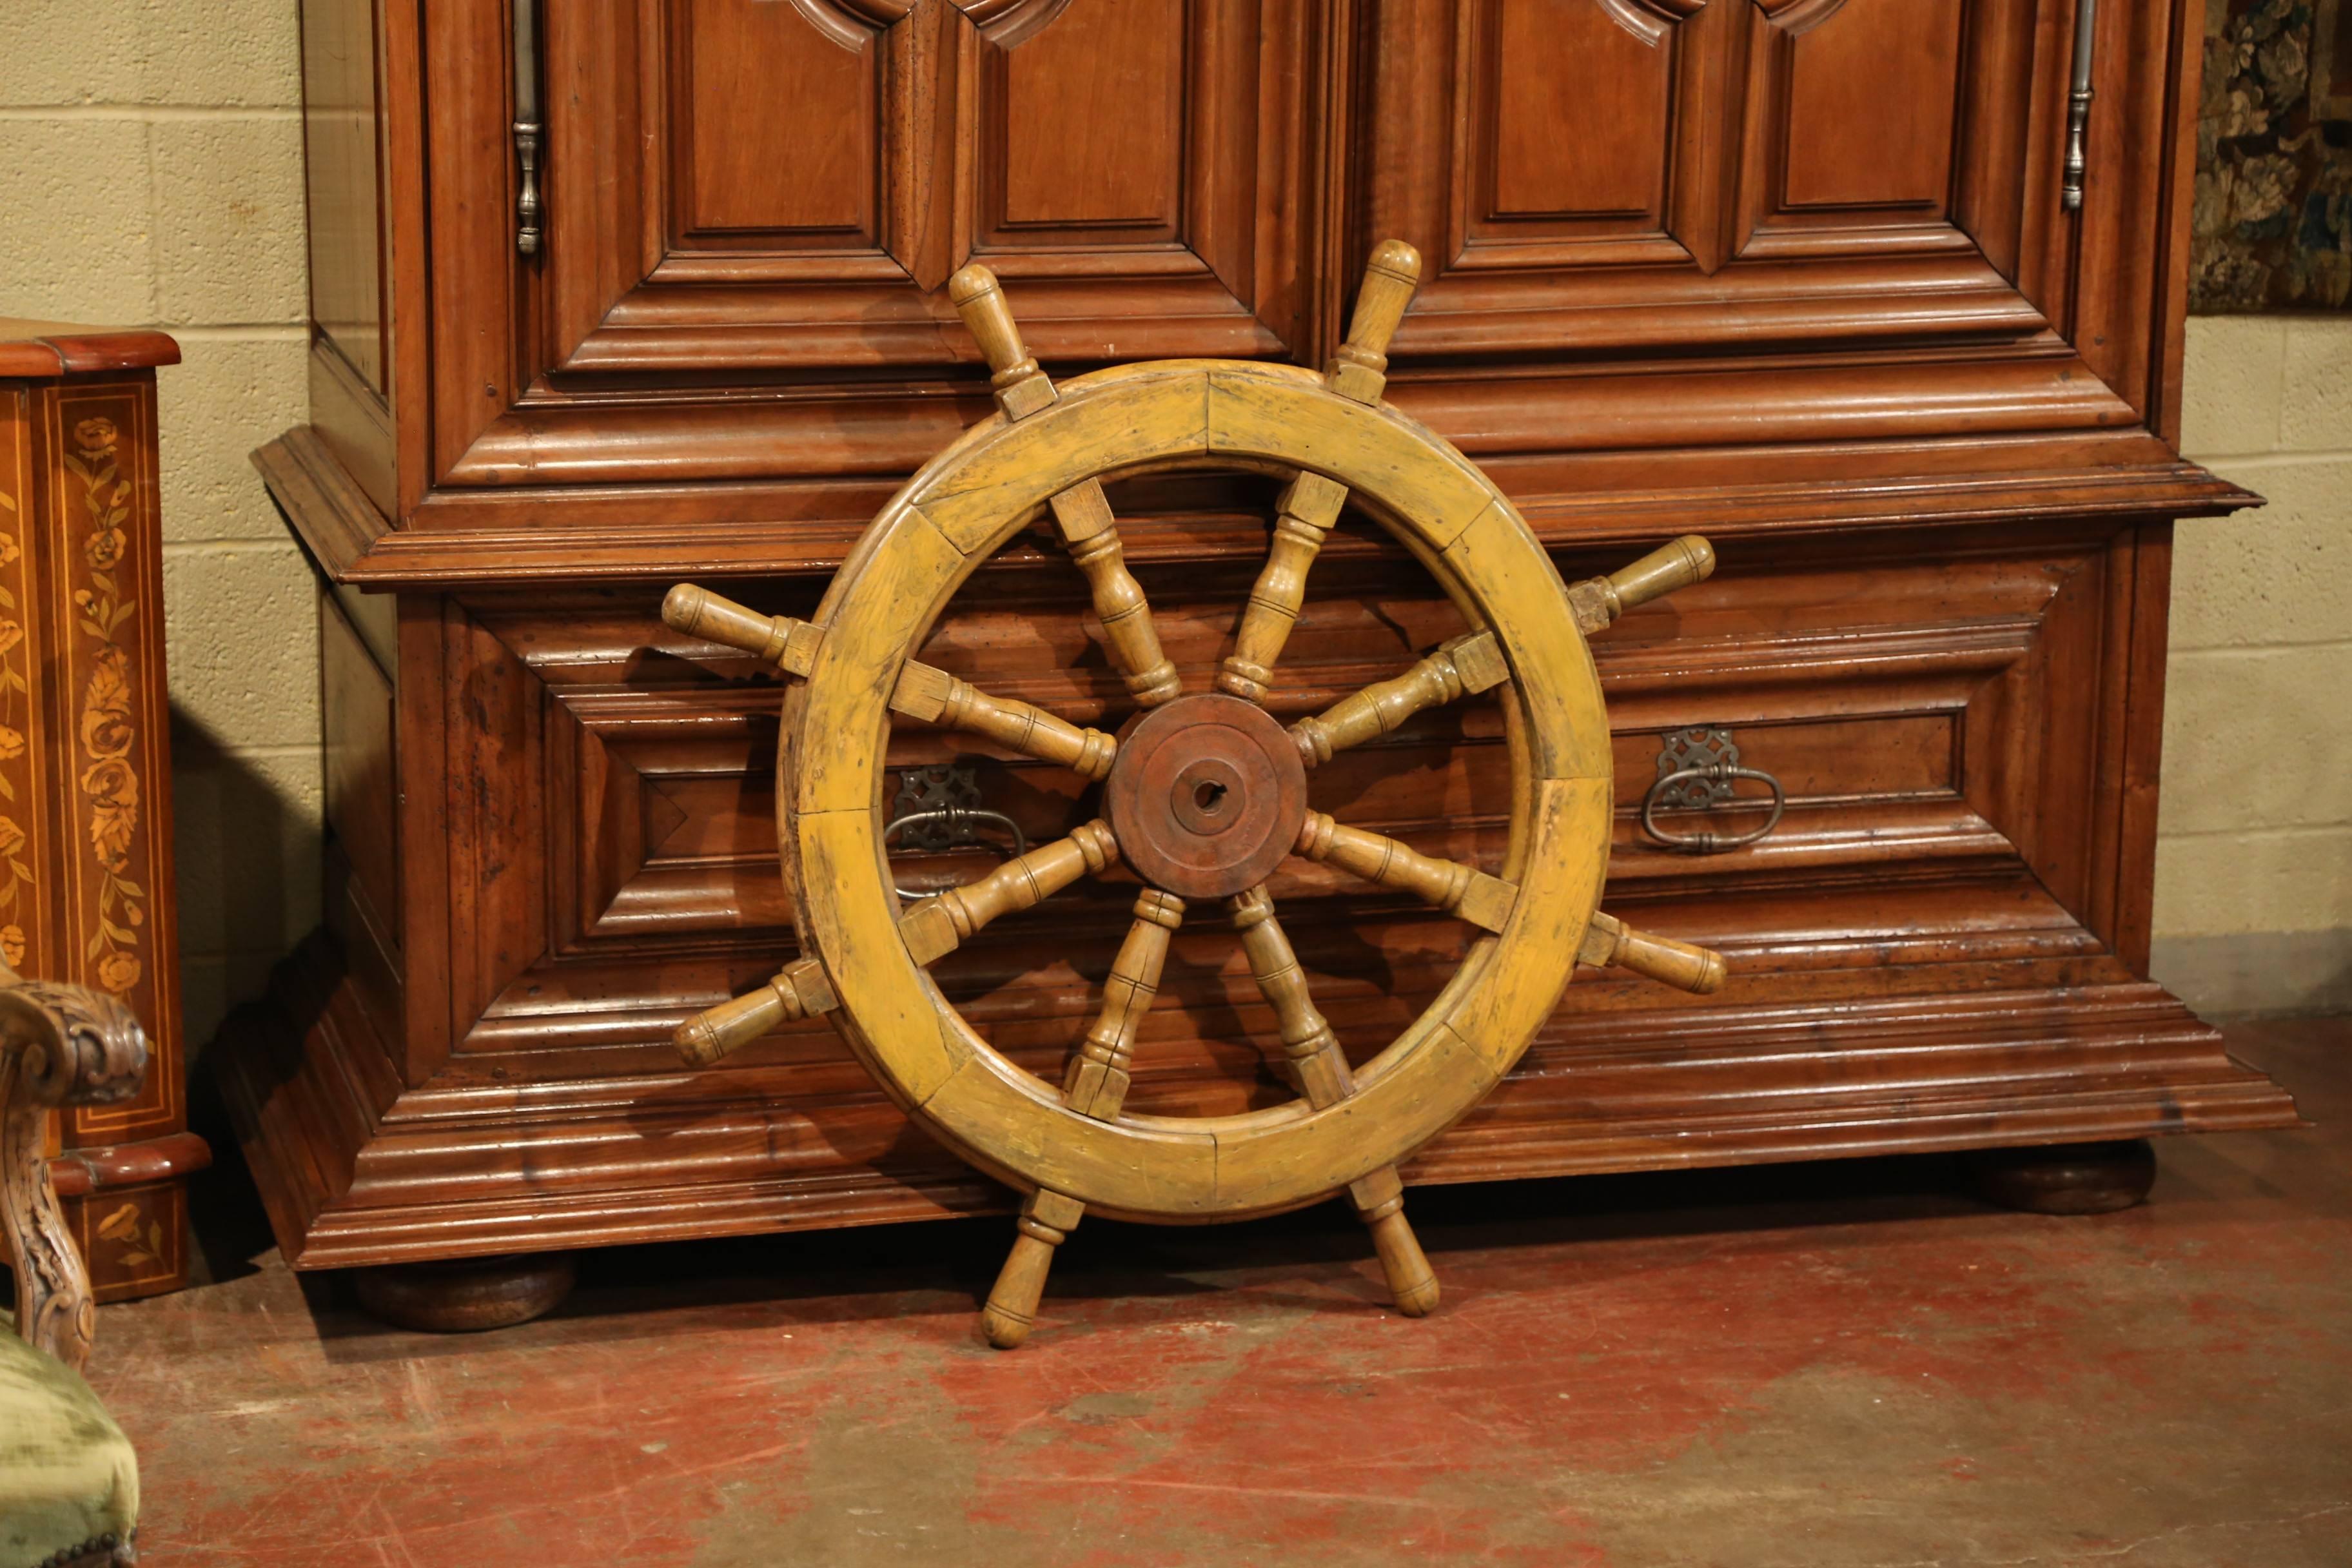 Cette grande roue de bateau antique en bois a été sculptée en France, vers 1880. Cet objet nautique traditionnel, en bois fruitier, possède son étrier métallique d'origine autour de huit fuseaux tournés avec poignées. Cet accessoire marin